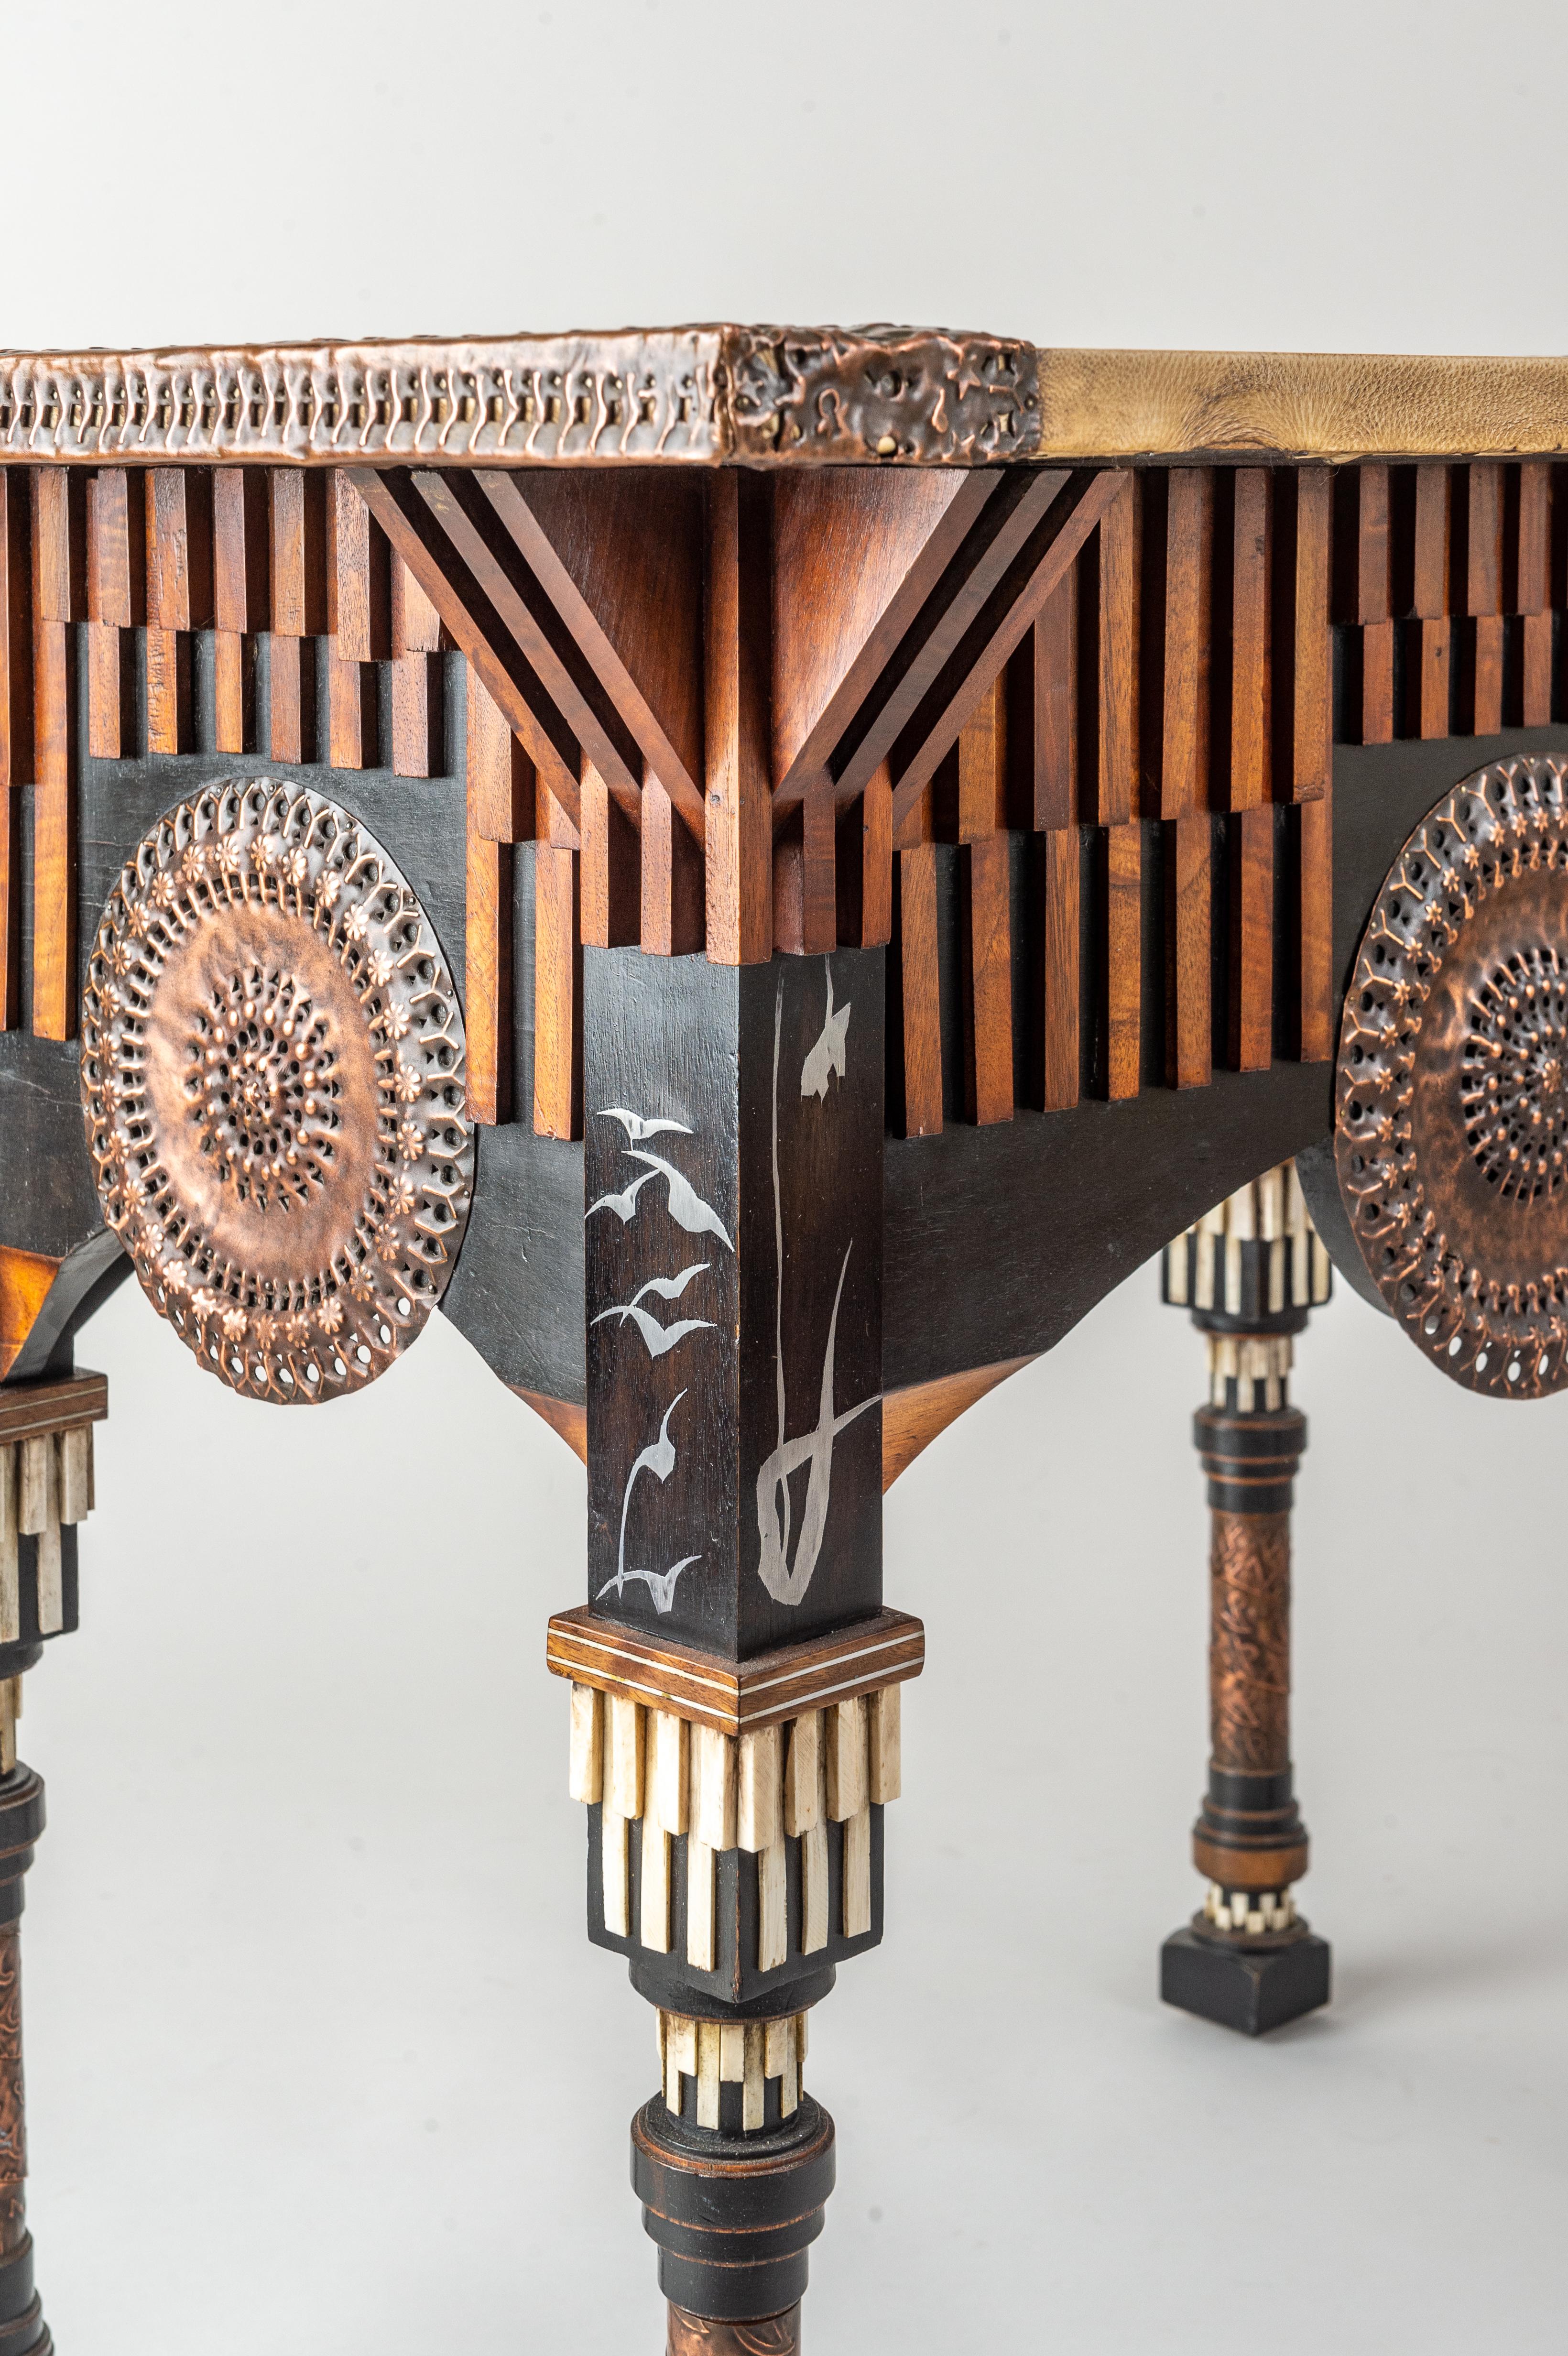 Une grande table Centre Carlo Bugatti avec les plus belles décorations complexes. Dans la décoration très stylisée, on peut voir de nombreuses références et inspirations culturelles - mauresques, japonaises, islamiques. La table est facilement